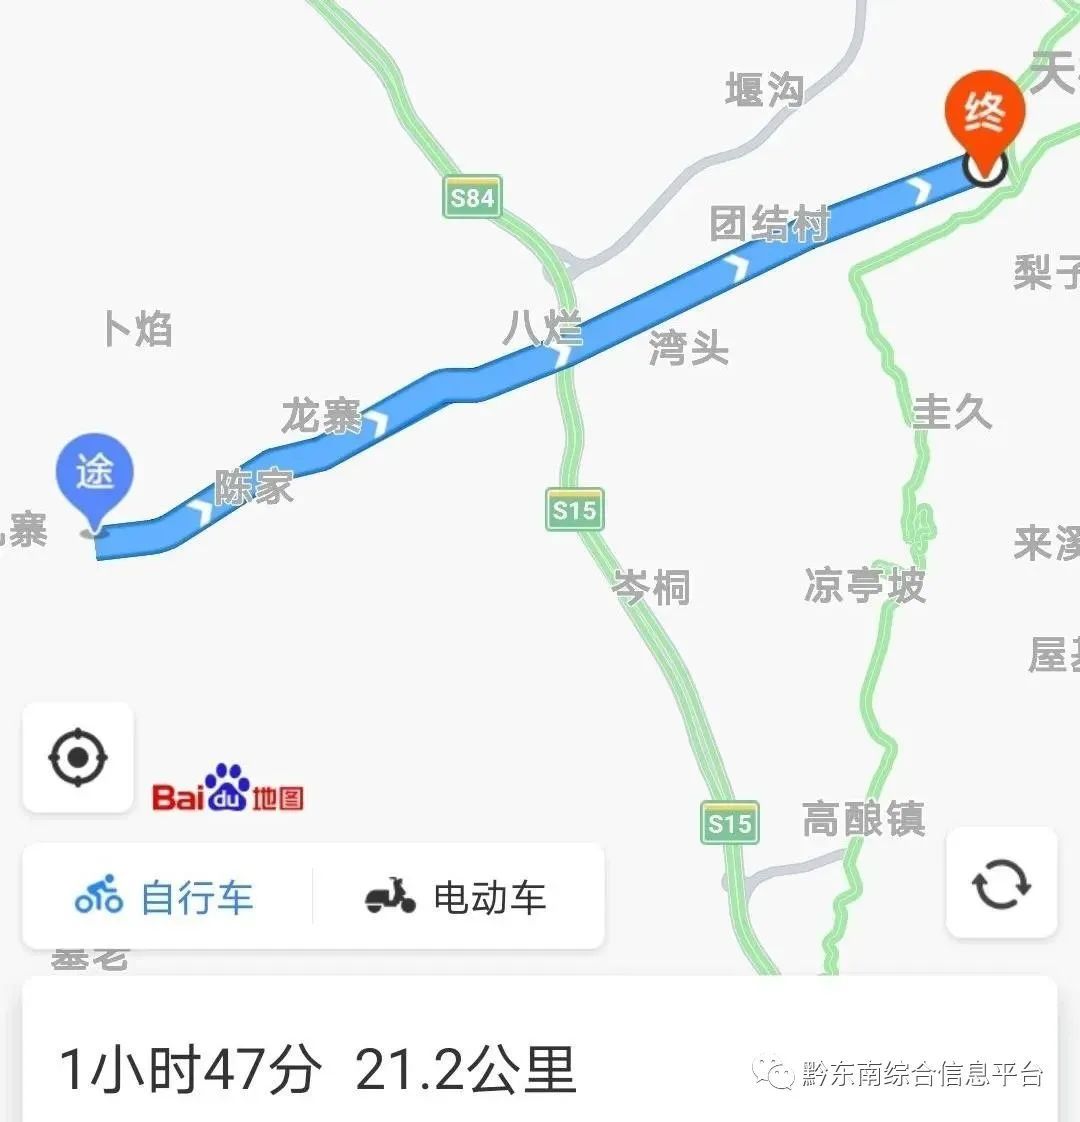 2020年贵州黔东南半程马拉松线下测试赛(天柱站)圆满结束!